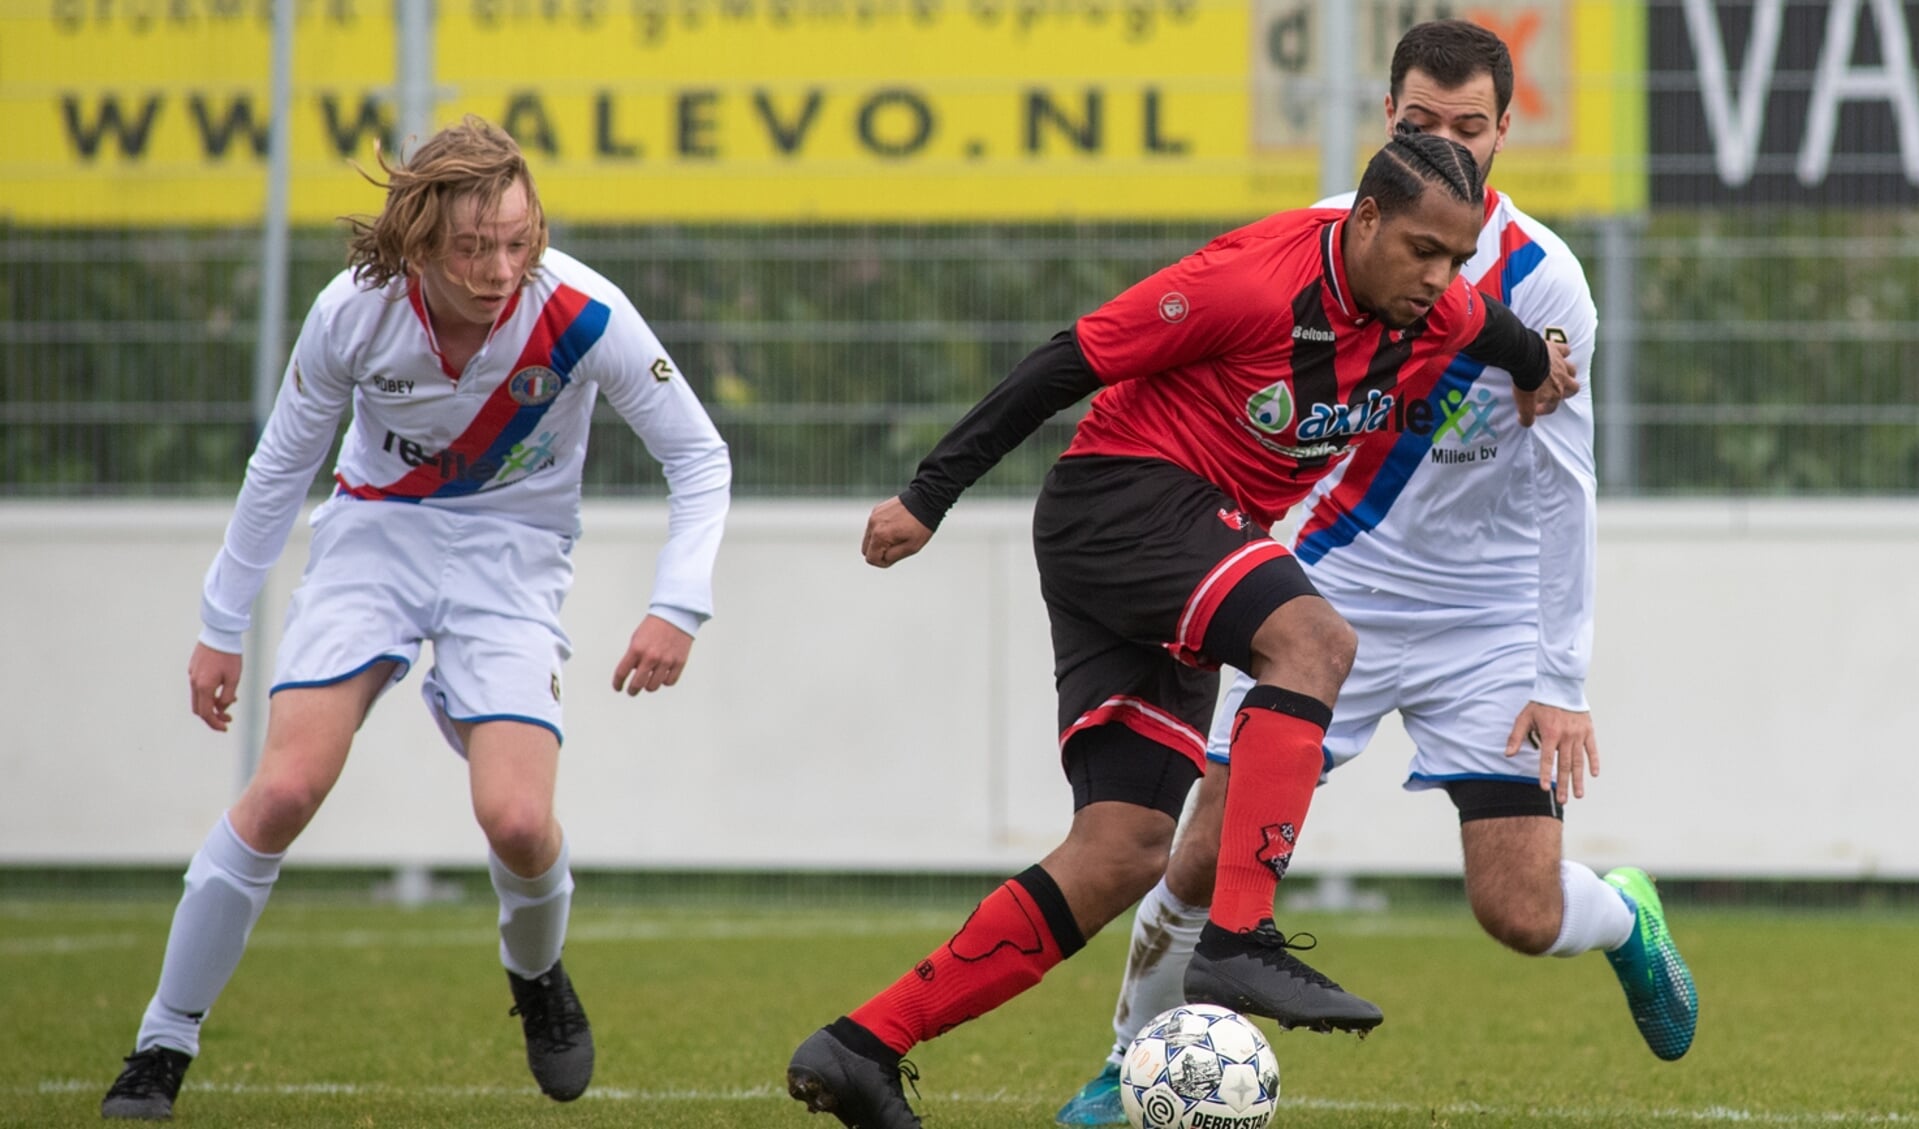 Denzel dos Santos was ook afgelopen weekend met zijn balvastheid een goed aanspeelpunt en de spil in de aanval van Vitesse Delft en een plaag voor de verdediging van Charlois. (foto: Roel van Dorsten) 